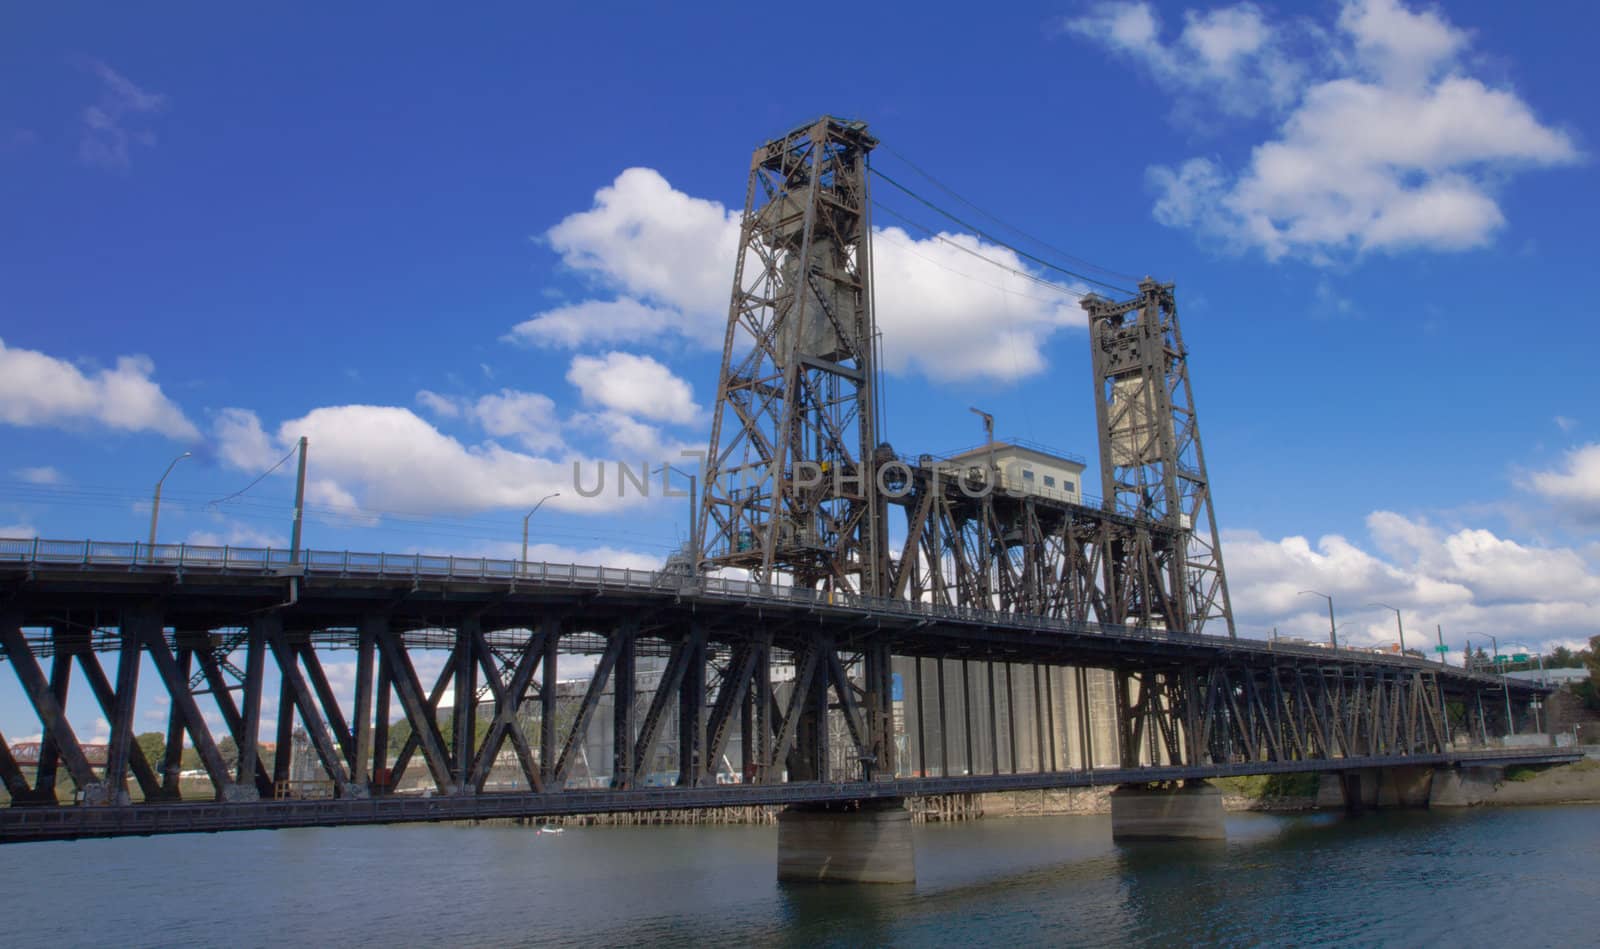 Old Steel draw bridge by bobkeenan